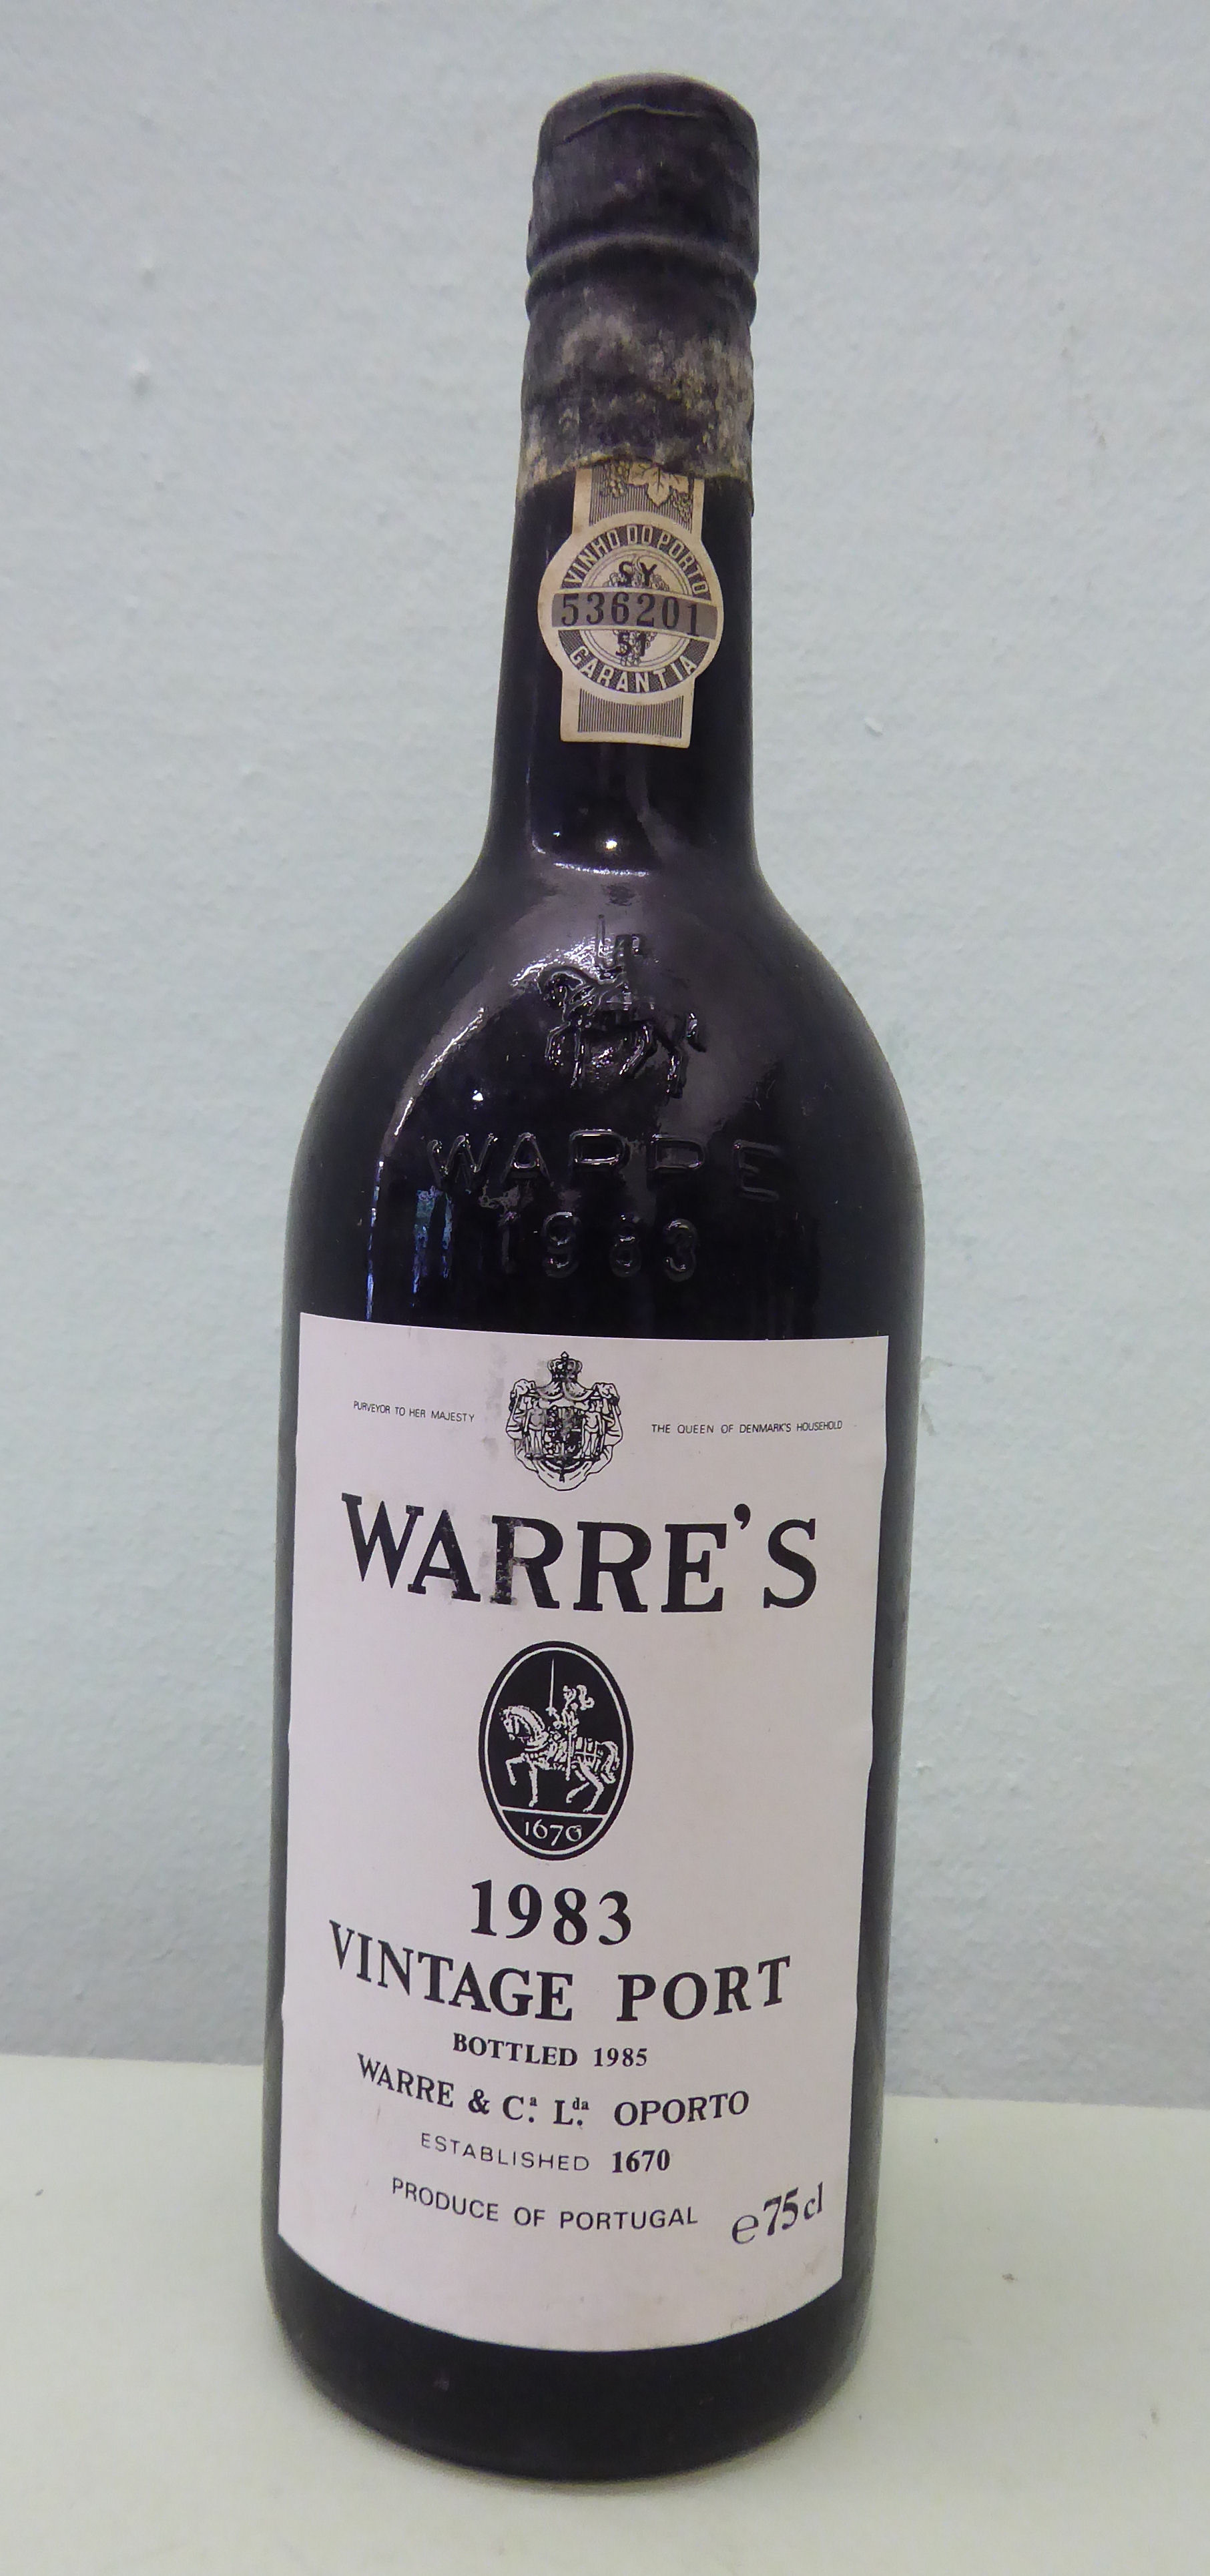 A bottle of Warre's 1983 Vintage Port